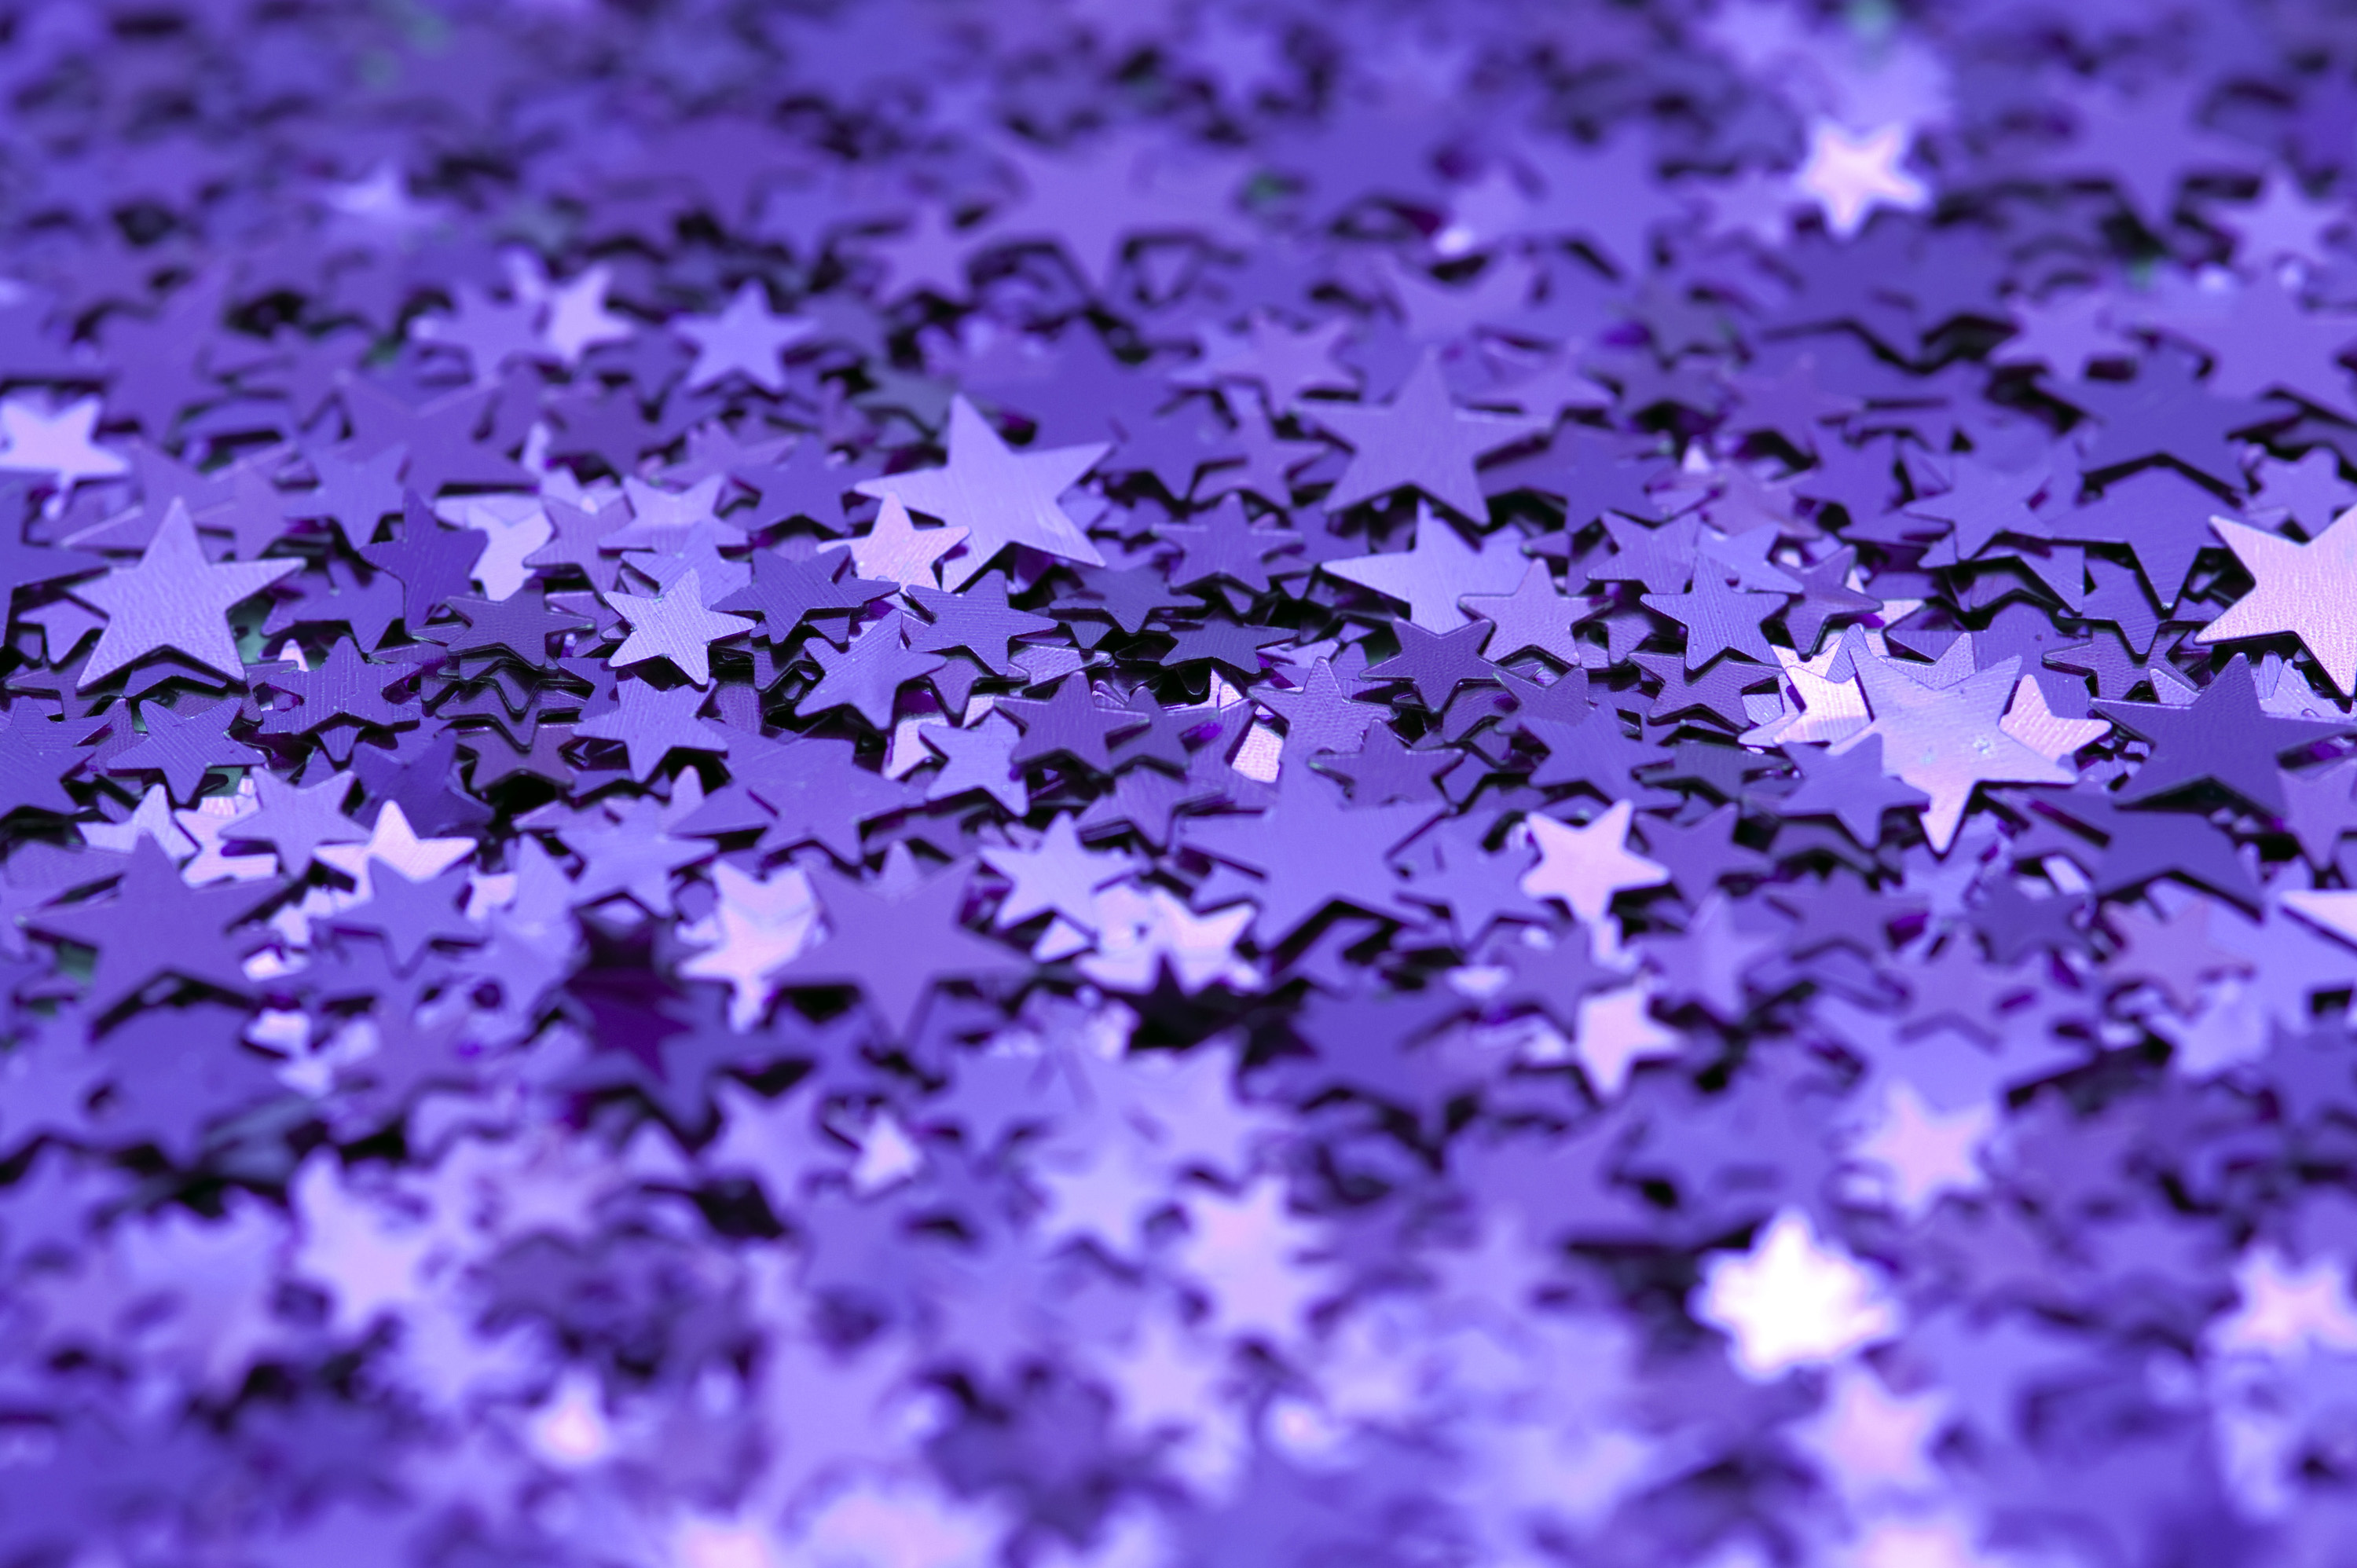 Backdrop: Purple glitter, Stars, Blur, Aesthetics of violet, Minimalism, Monochrome. 3000x2000 HD Wallpaper.